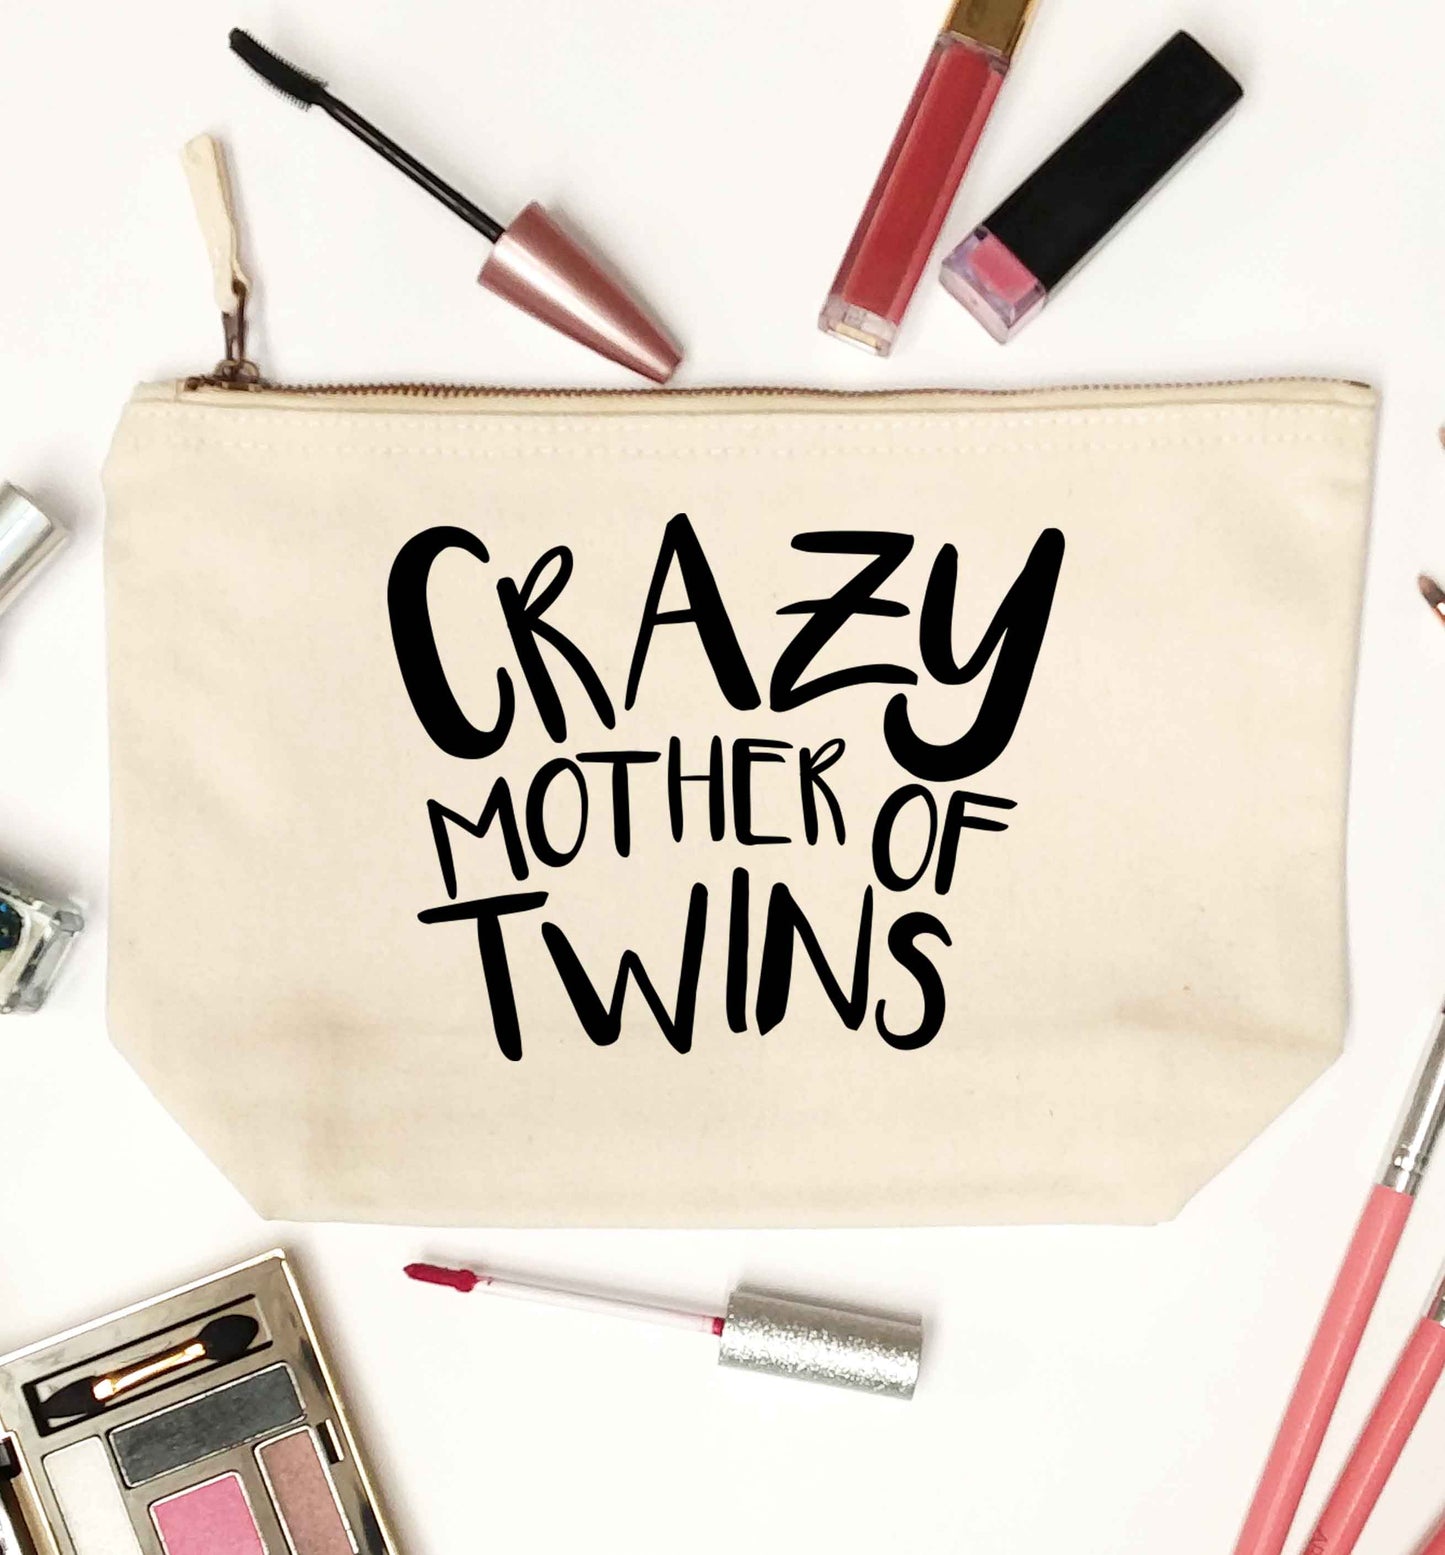 Crazy mother of twins natural makeup bag